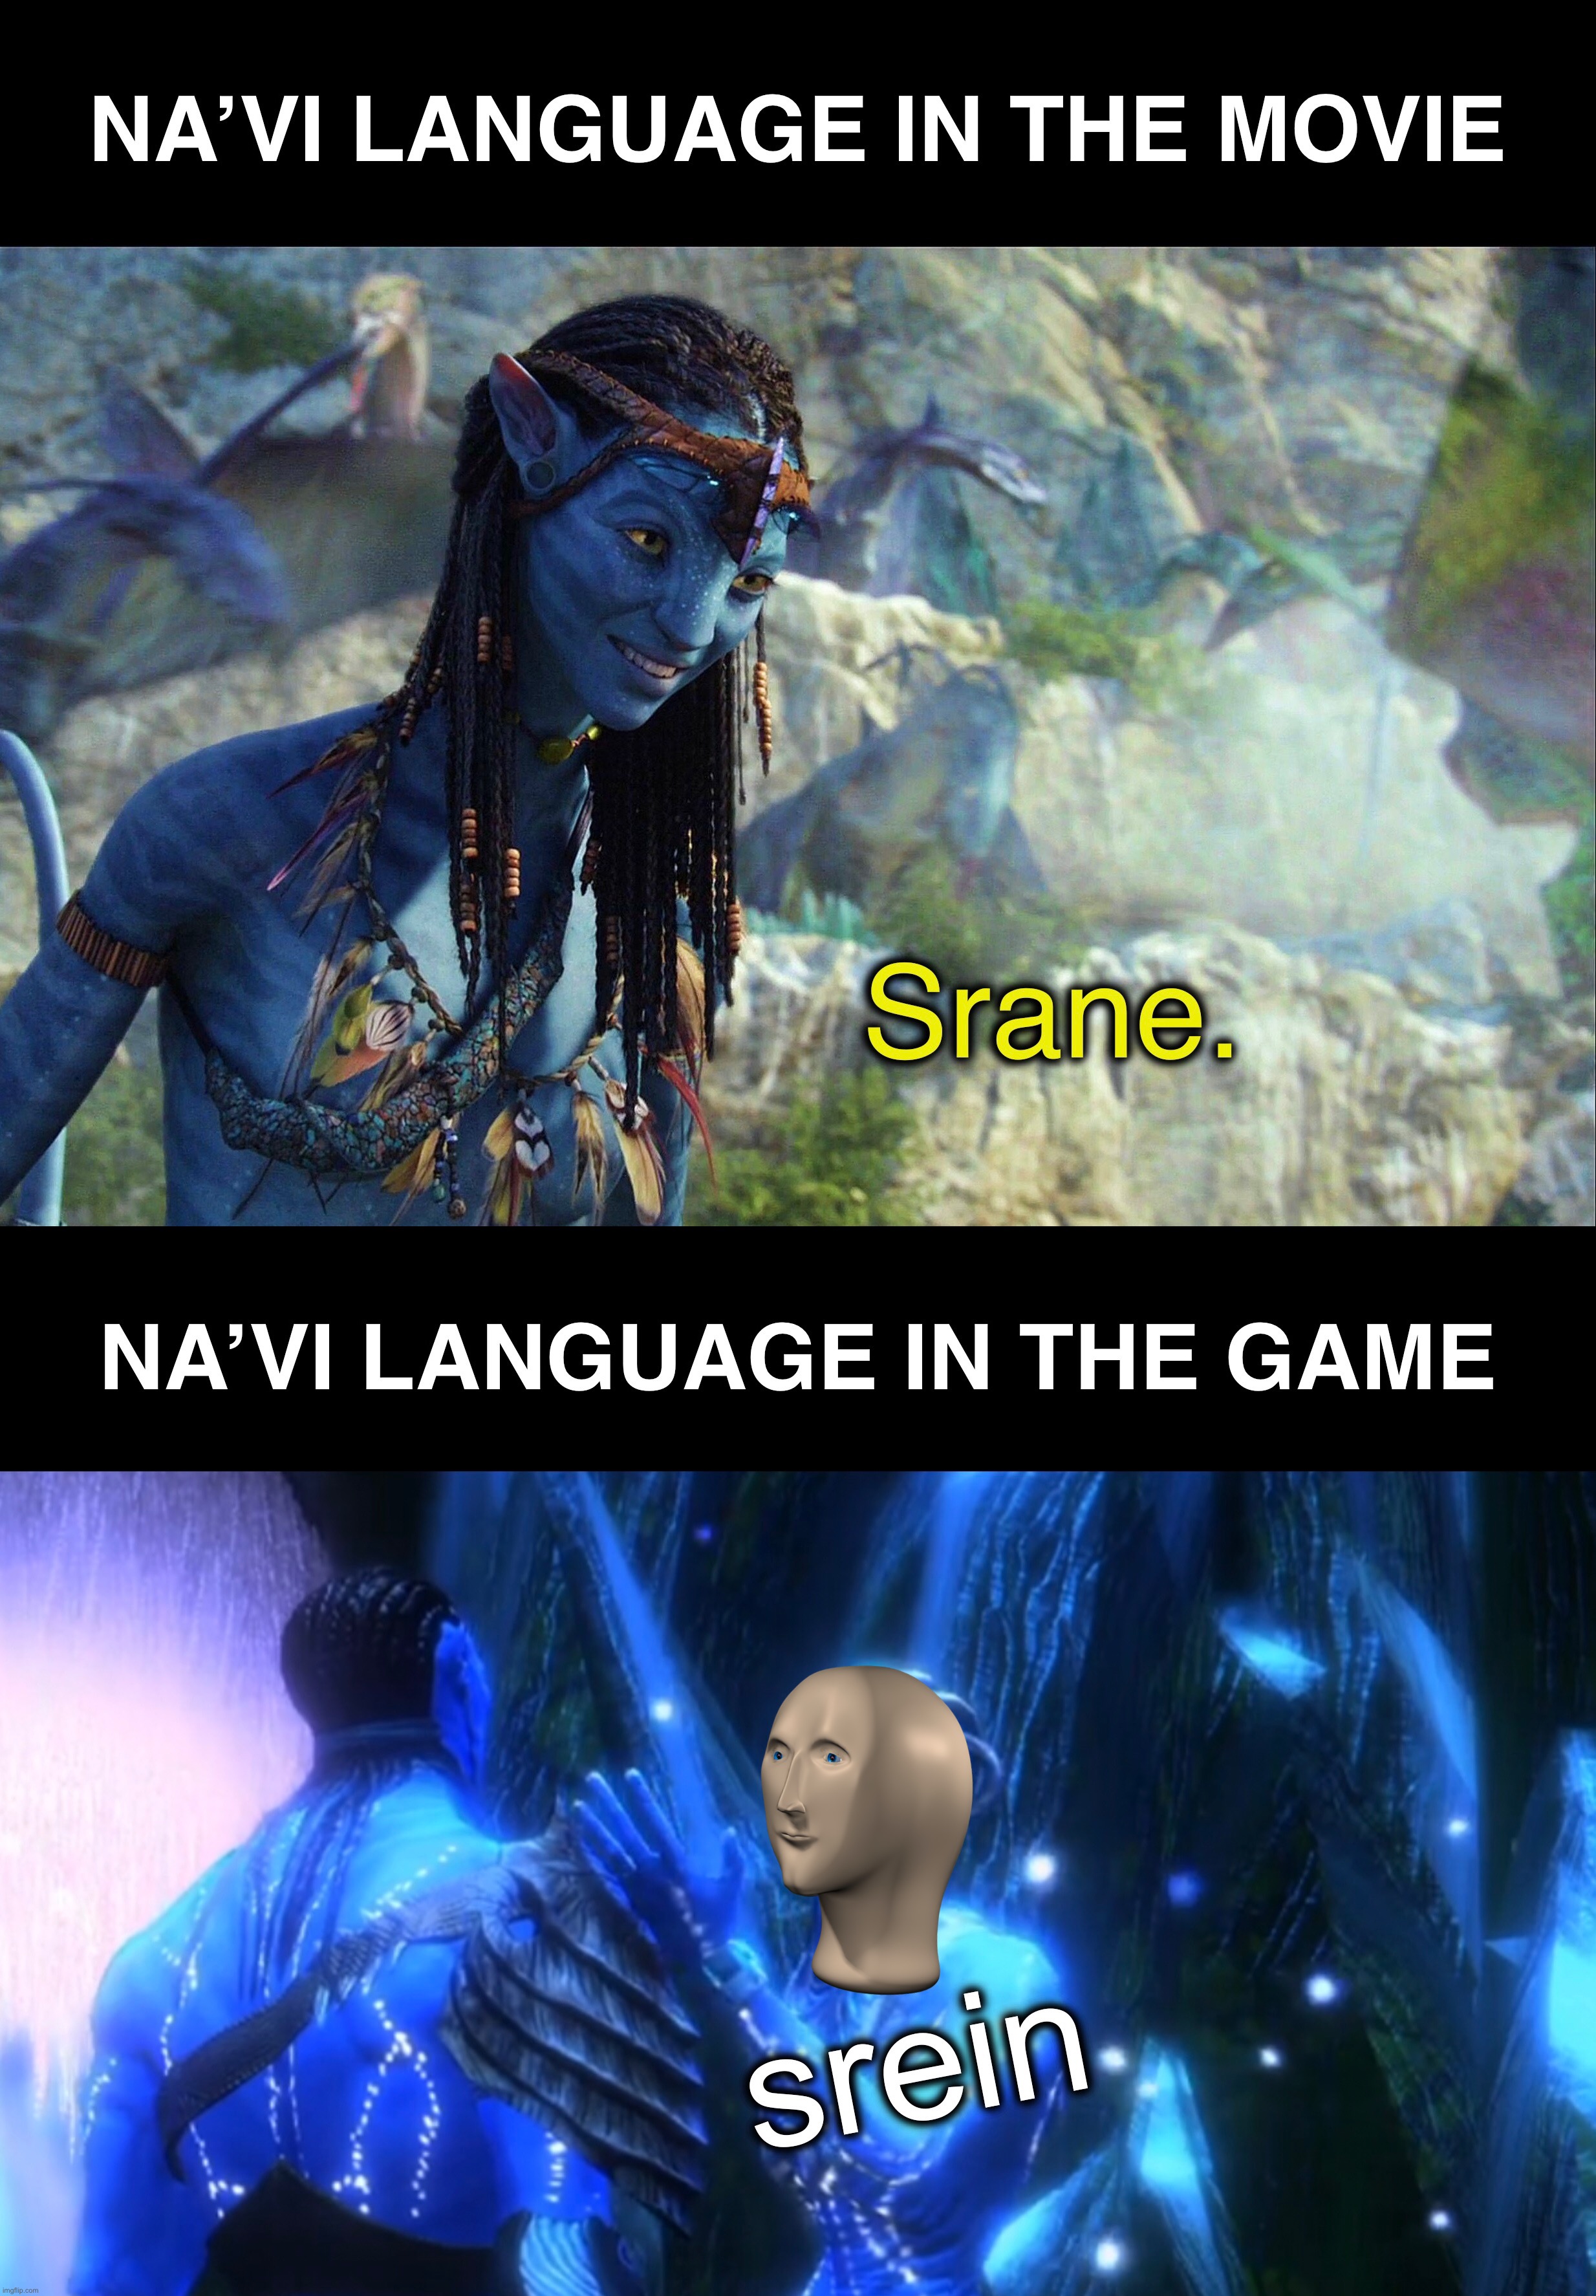 Avatar video game memes: Cá nhân hóa trò chơi bằng avatar của riêng bạn và chơi thử những thử thách mới với cộng đồng Avatar Video Game Memes đang phát triển mạnh mẽ. Trở thành người chơi giỏi nhất và nhận được nhiều giải thưởng hấp dẫn, chỉ với những bức ảnh avatar vui nhộn của mình.